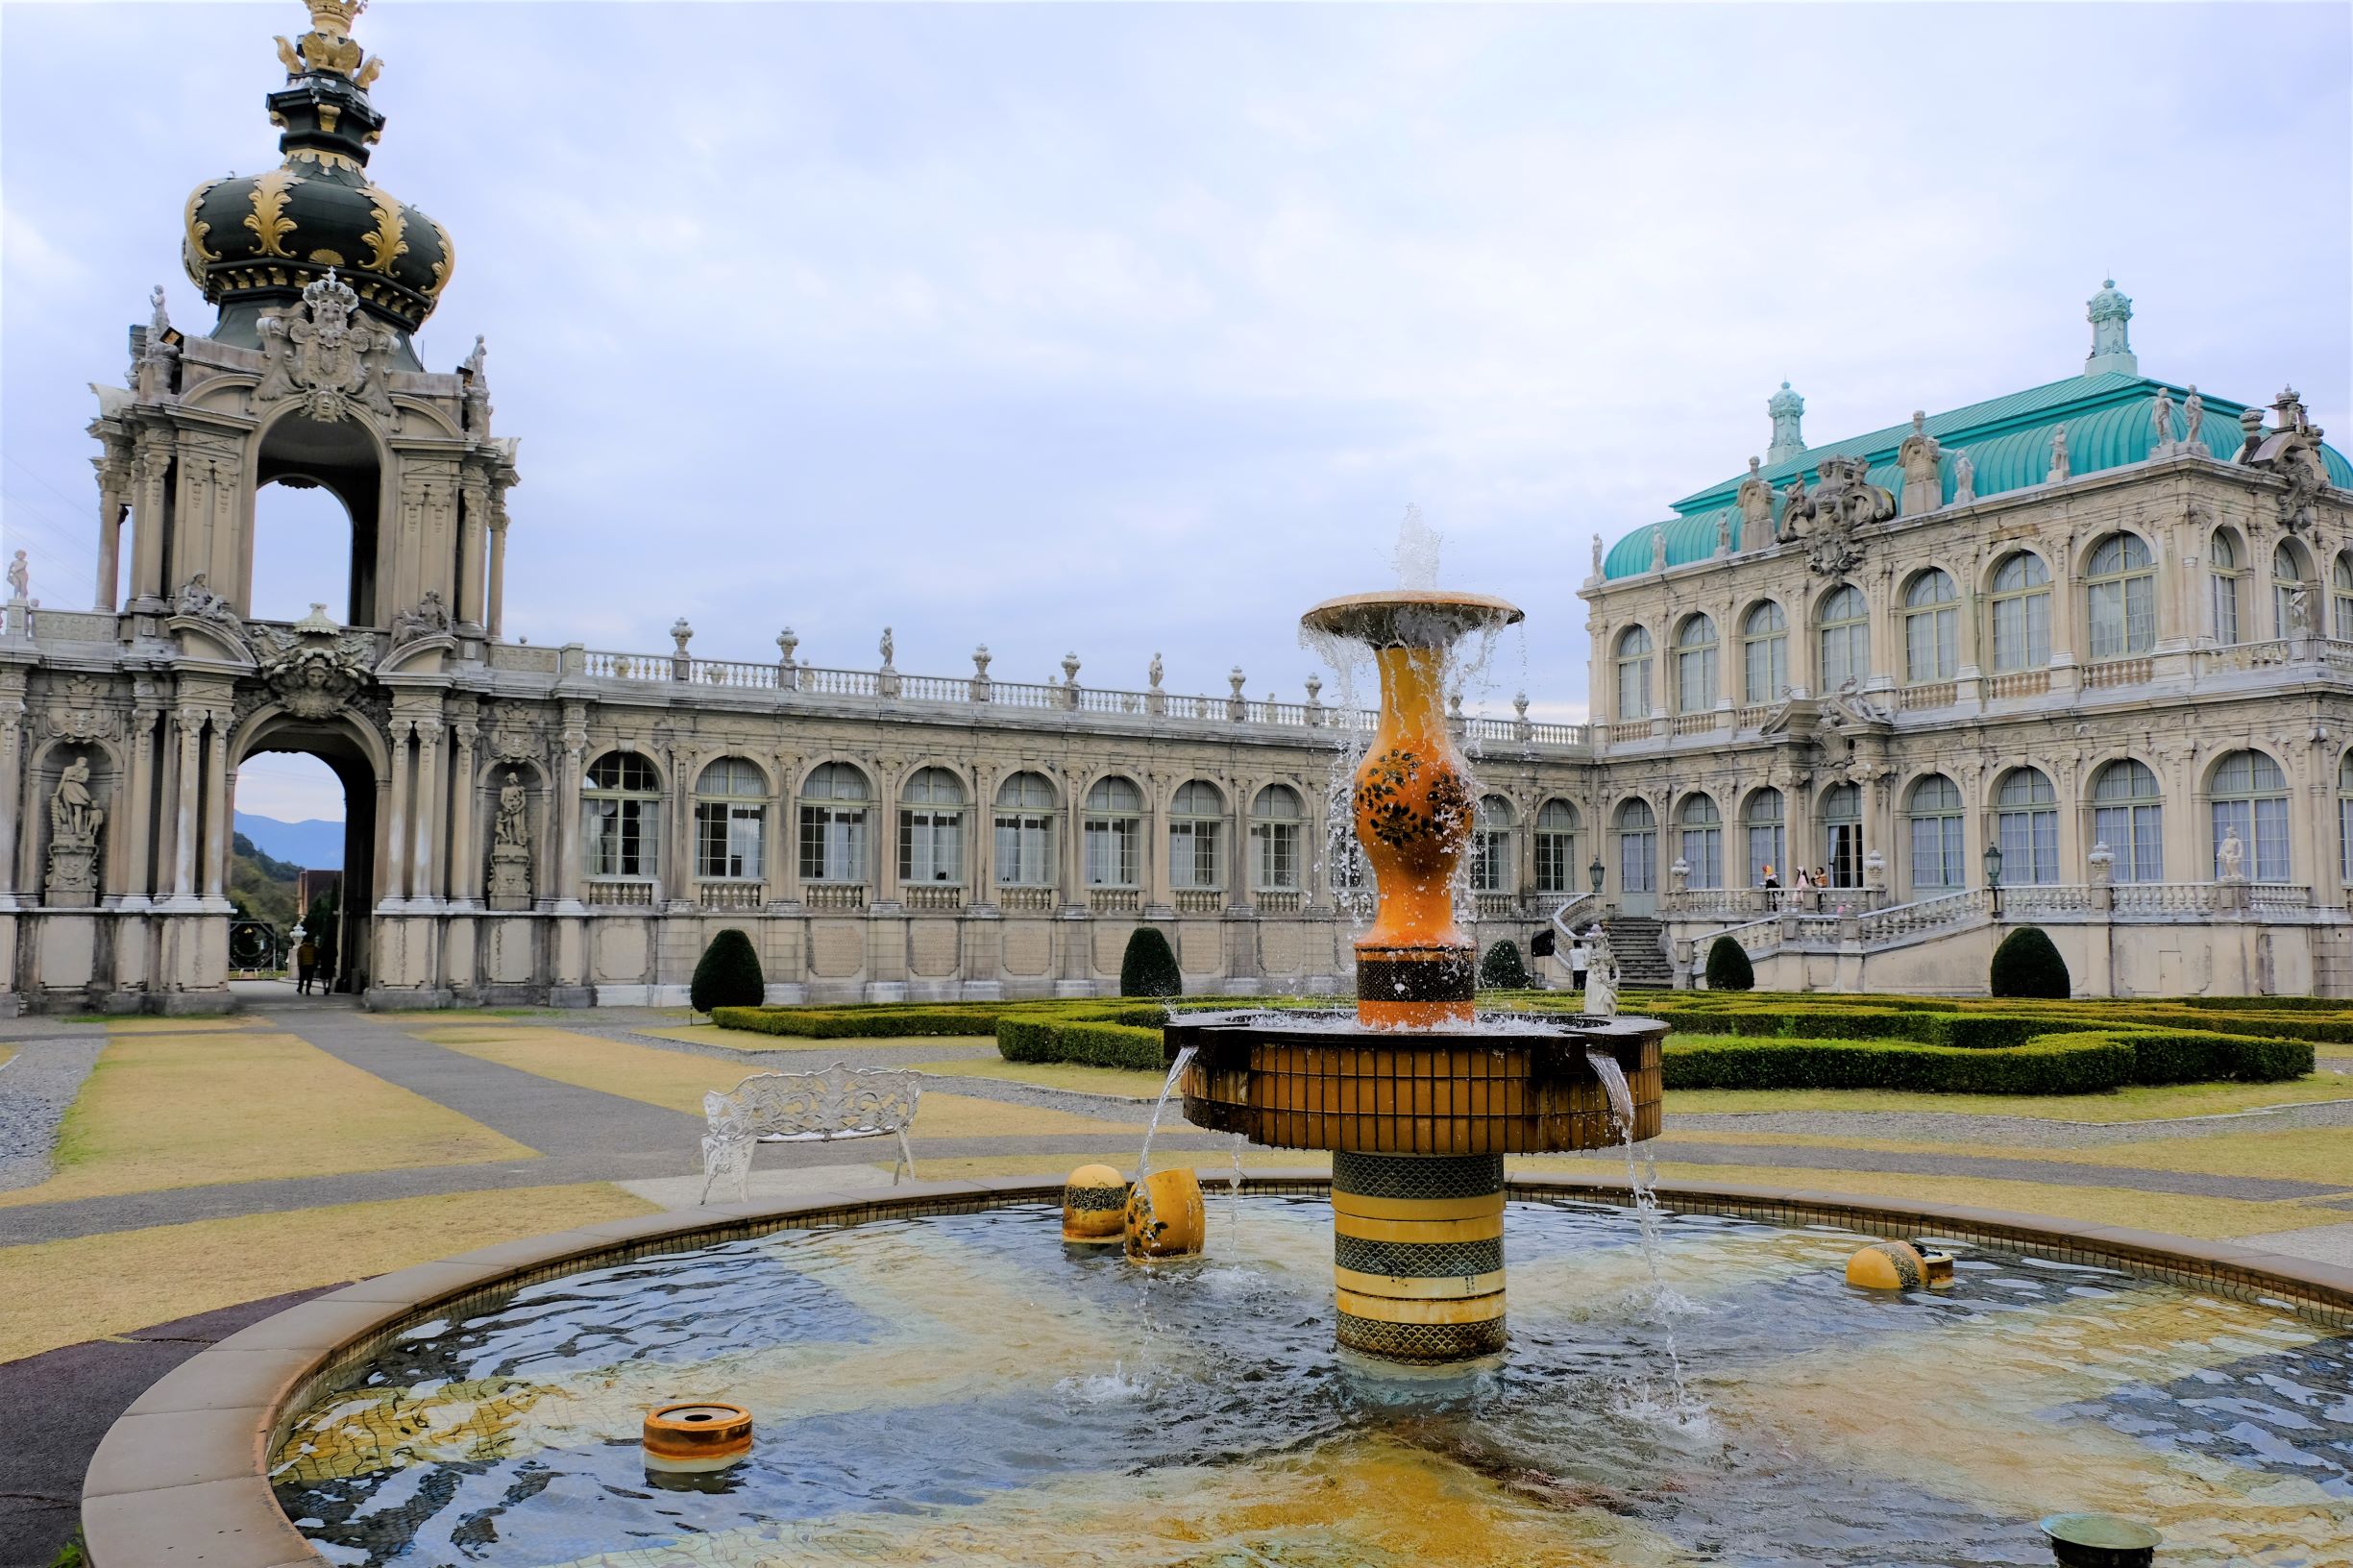 ツヴィンガー宮殿と庭園